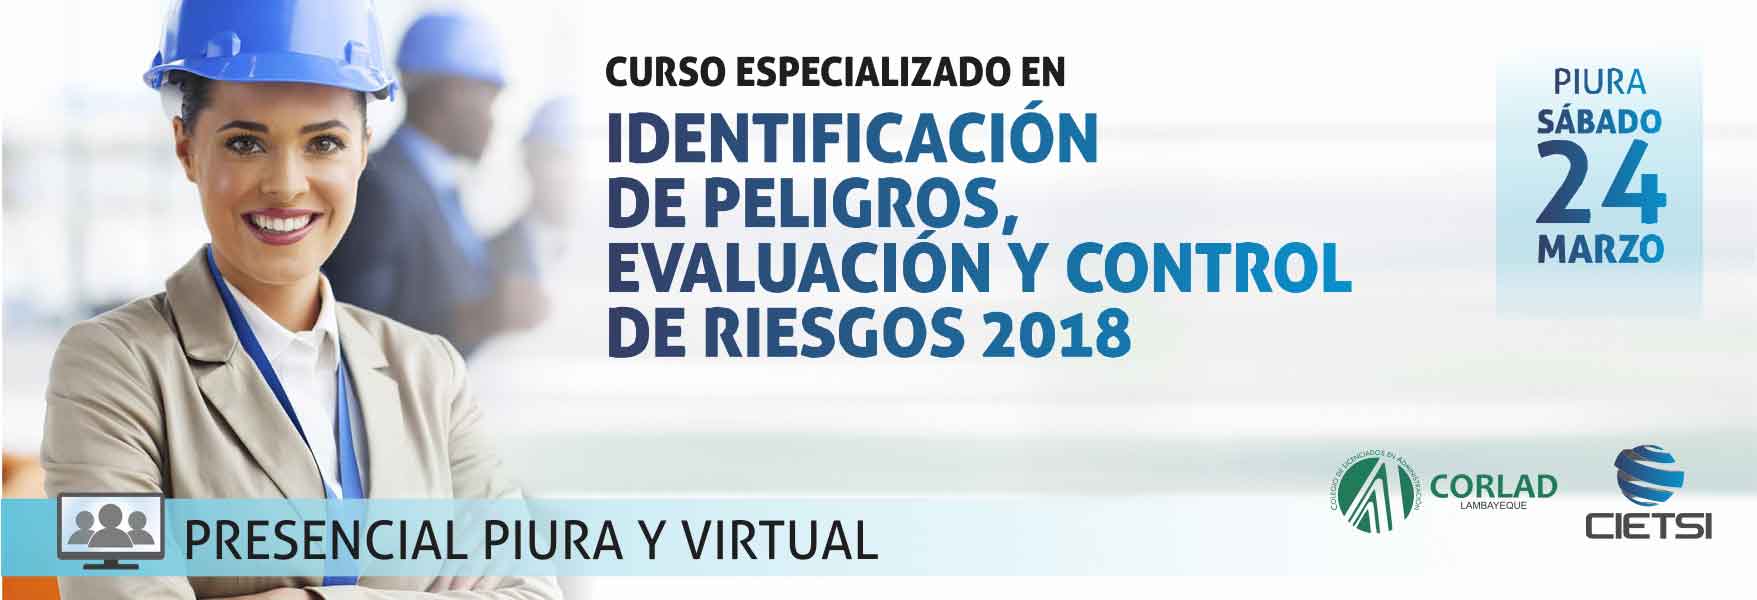 curso especializado identificaciOn de peligros  evaluaciOn y control de riesgos 2018